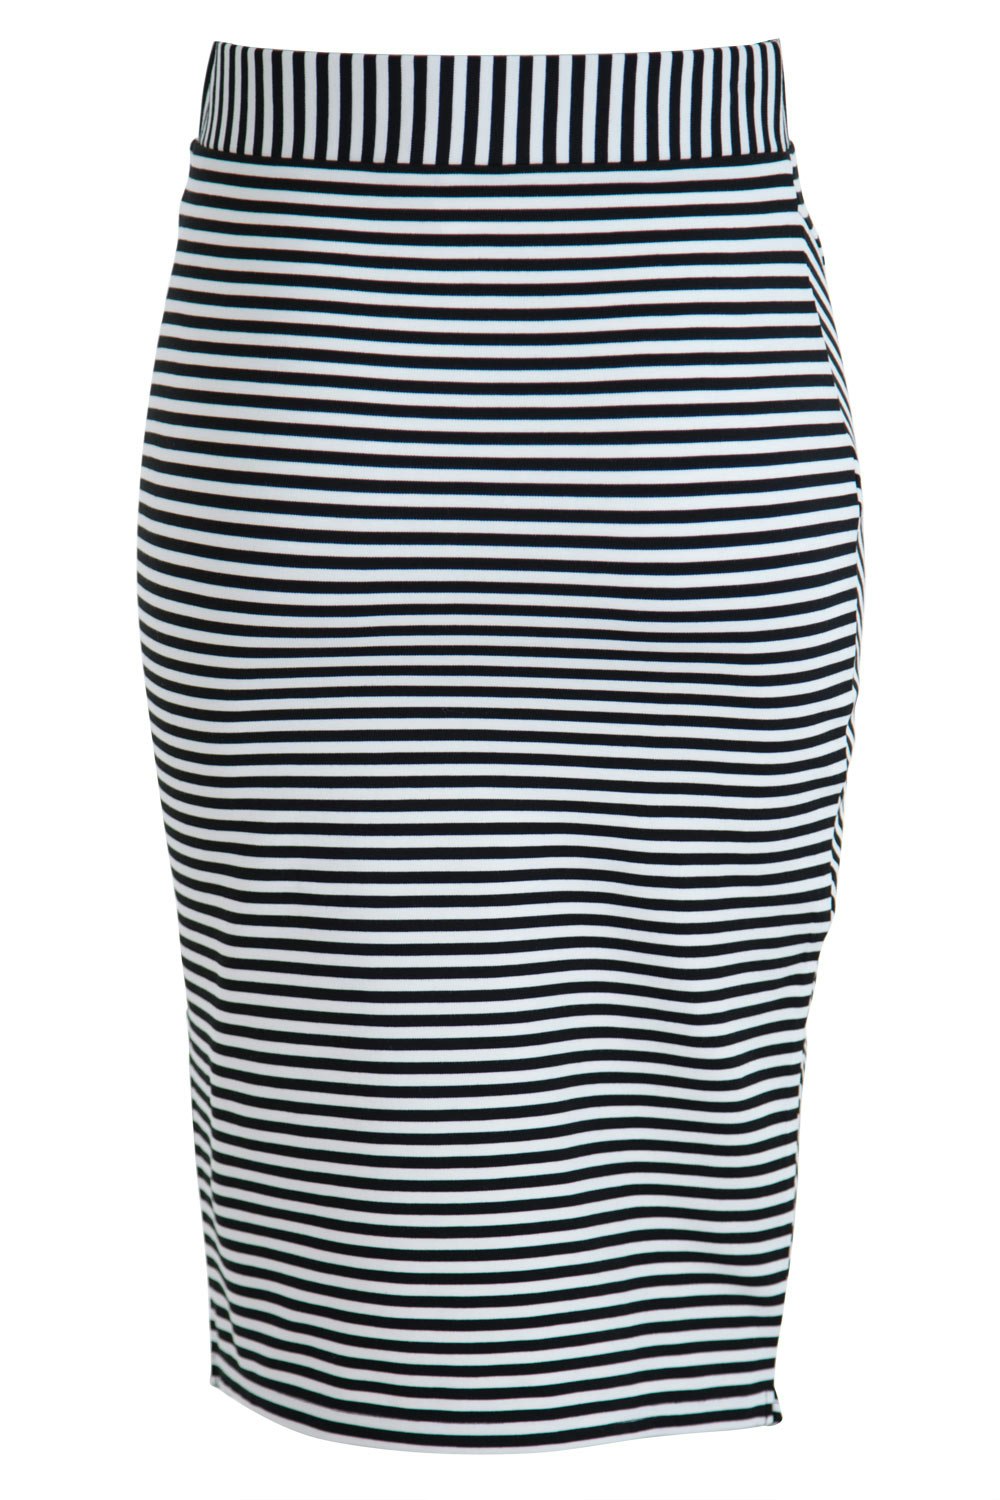 Wite Splice Striped Skirt - Womens Knee Length Skirts - at Birdsnest ...